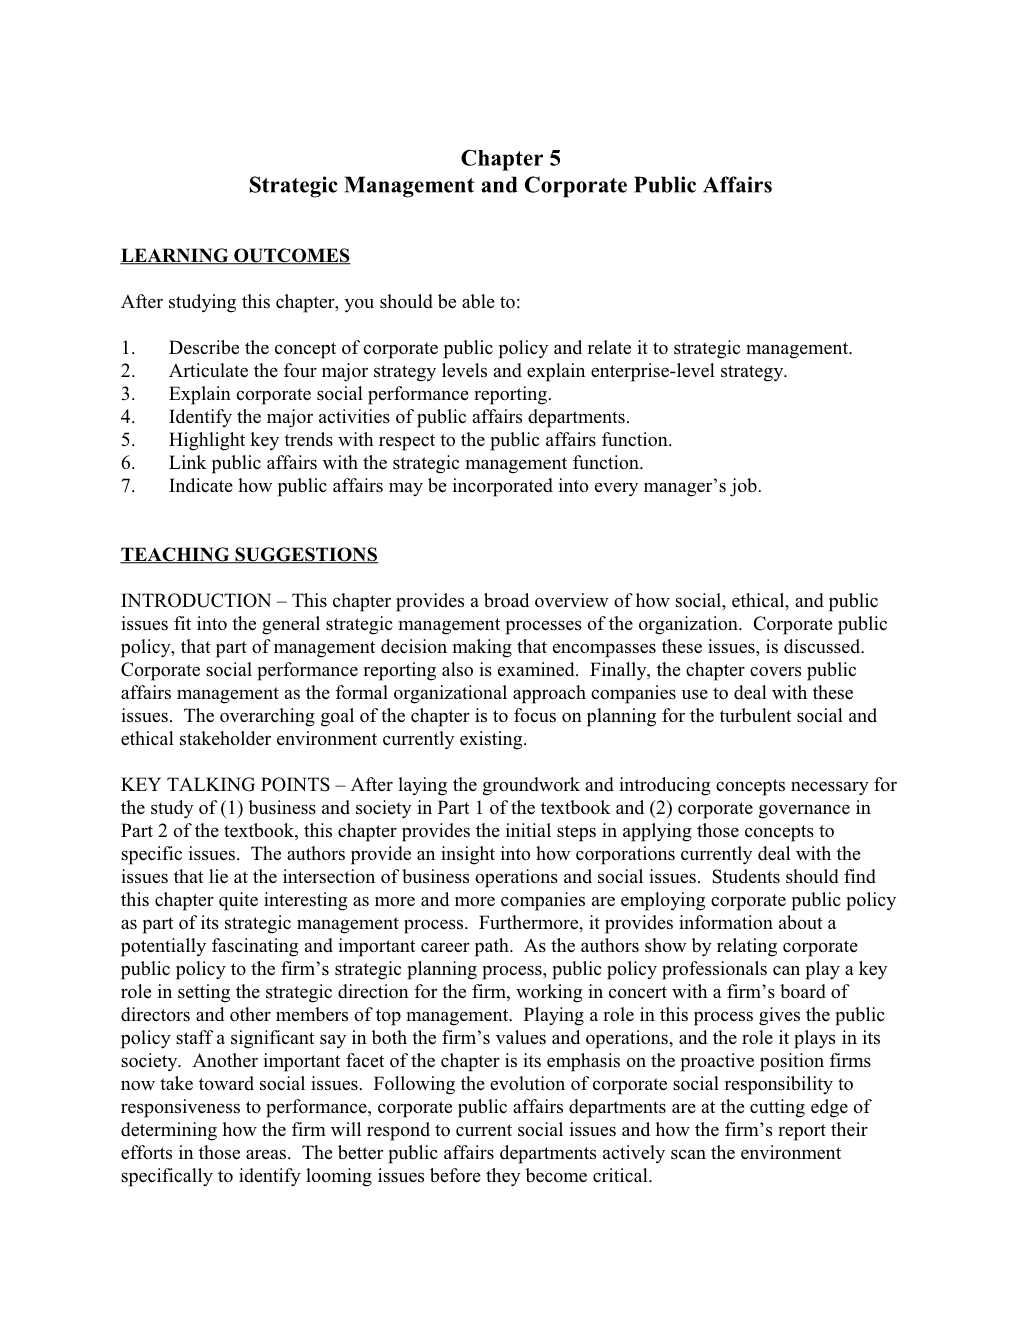 Strategic Management and Corporate Public Affairs